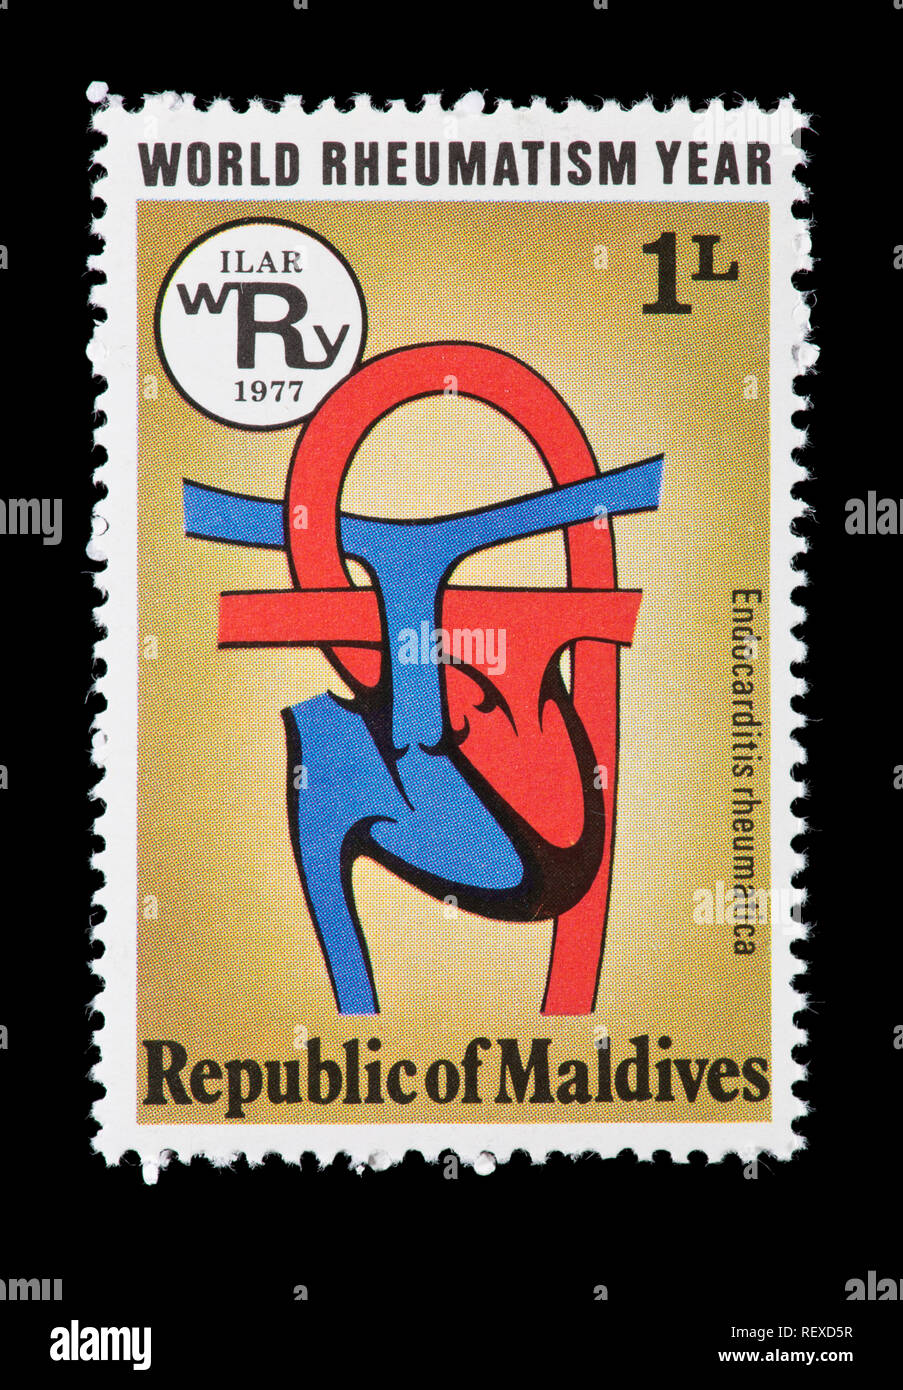 Francobollo dalle Maldive raffigurante un cuore reumatica, rilasciati per il mondo dei reumatismi anno. Foto Stock